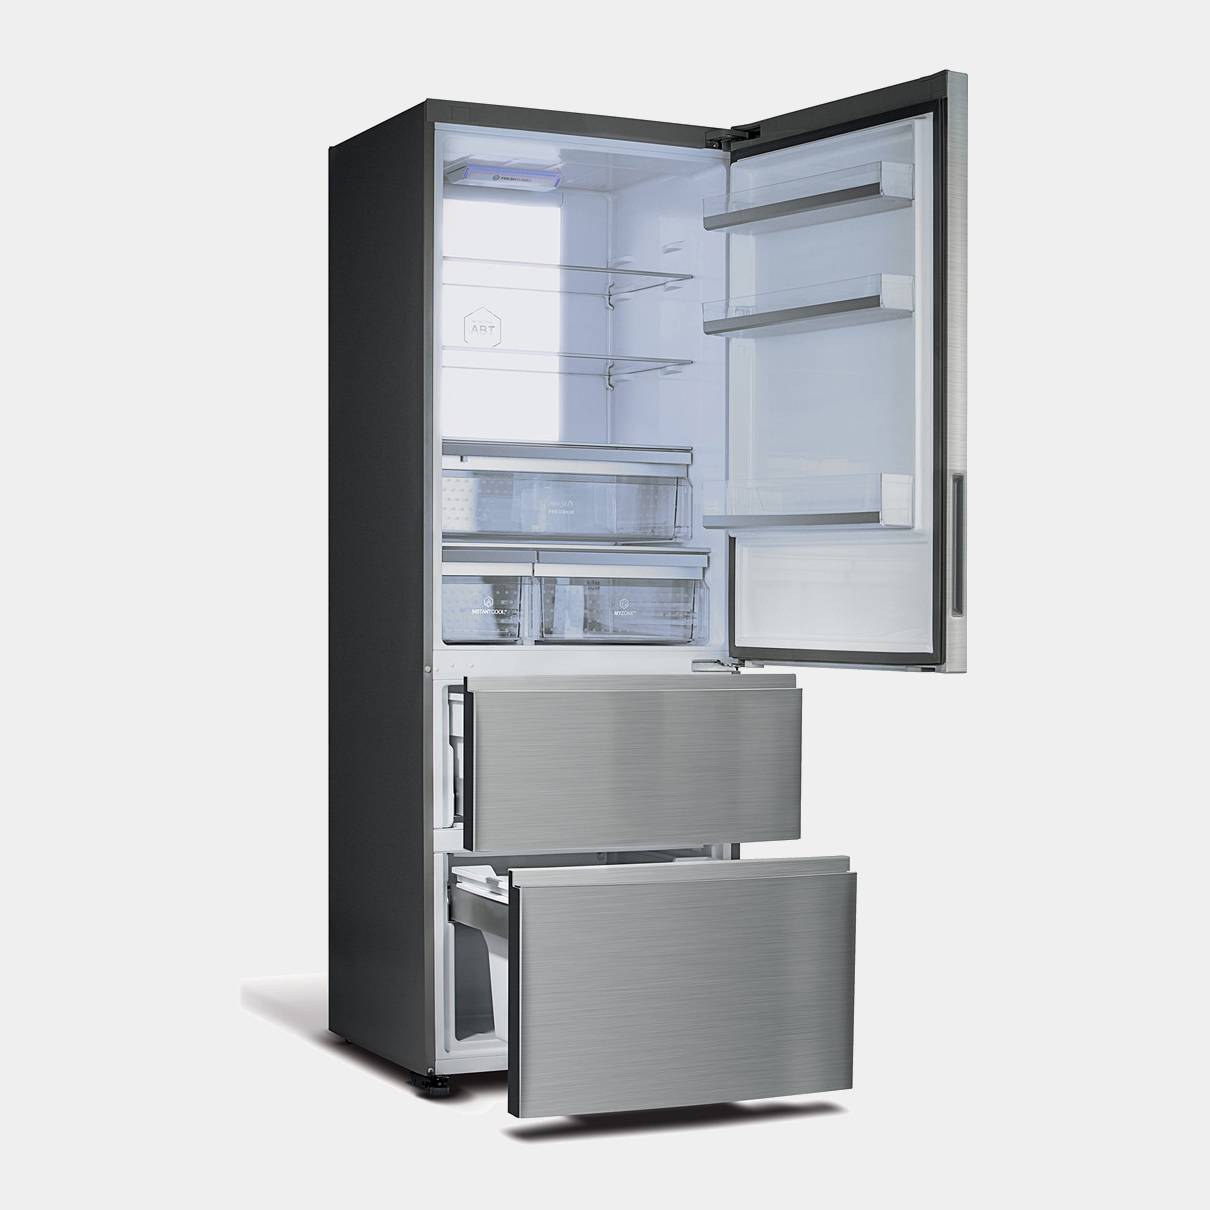 Фирмы производителей холодильников. Холодильник Haier a3fe742. Холодильник многодверный Haier a3fe742cmjru. Haier 640 холодильник. Холодильник Haier 70.